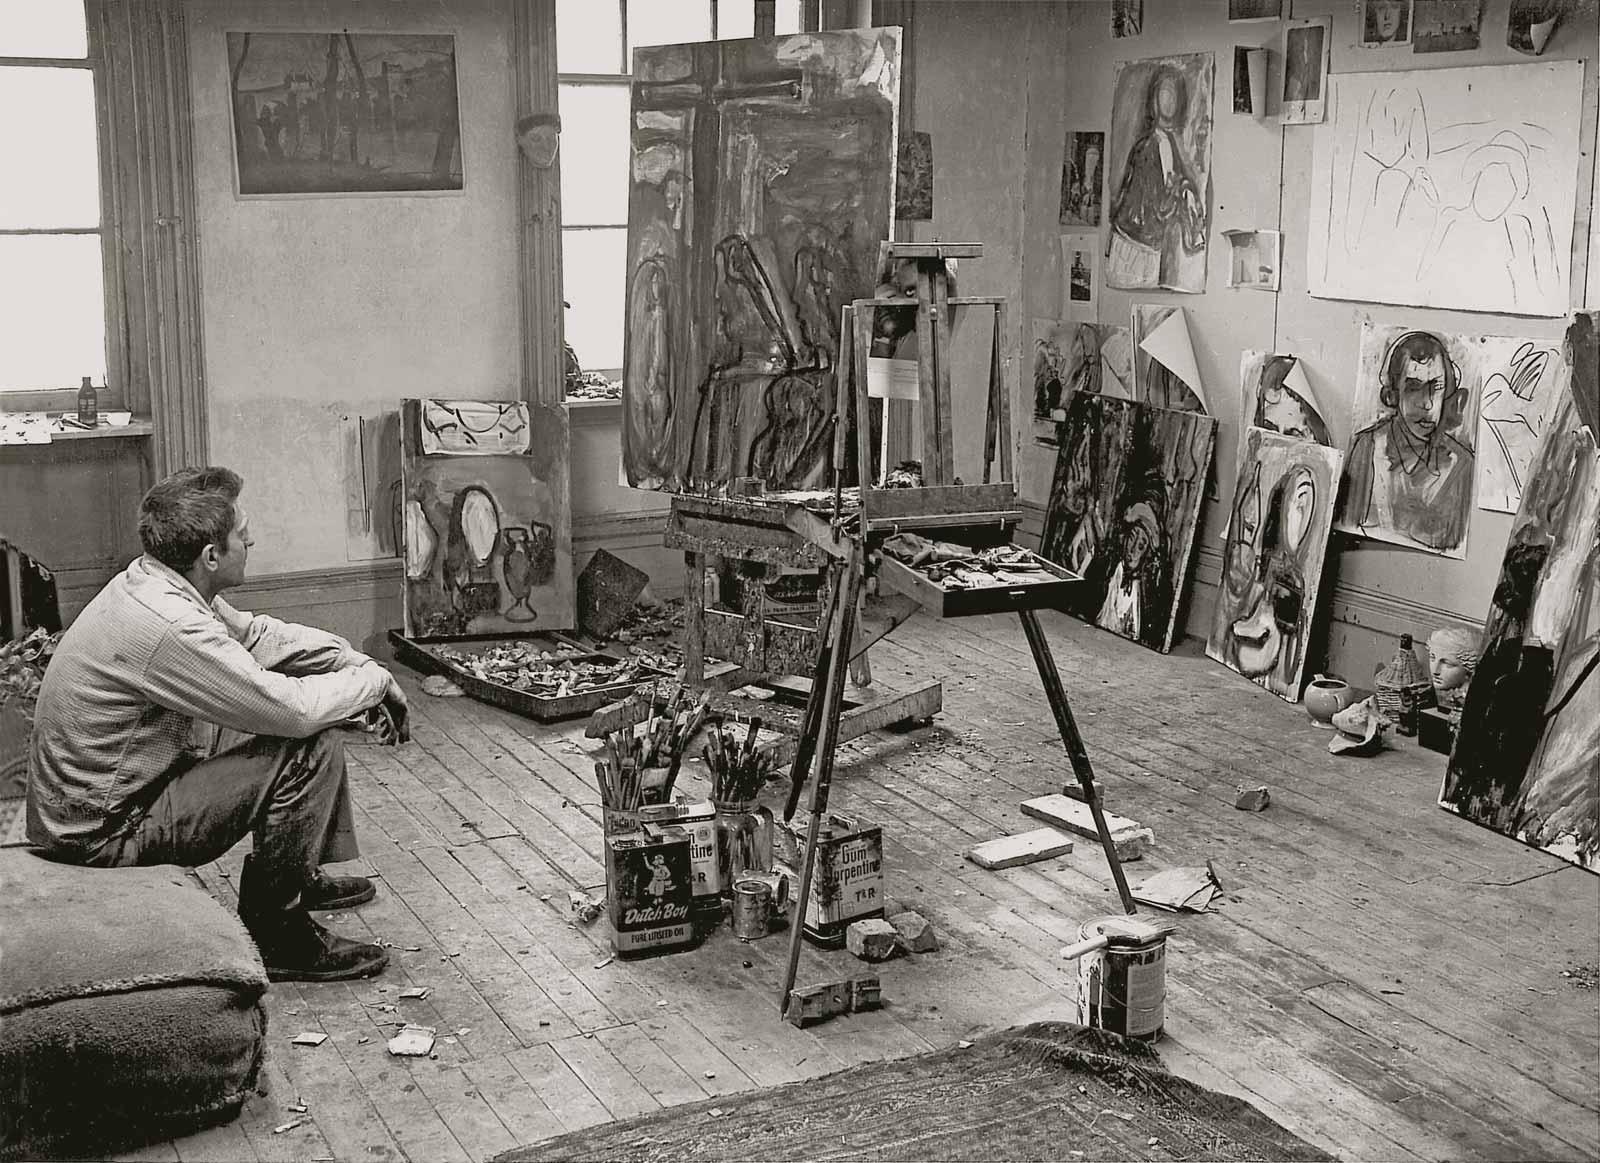 Robert de Niro, Sr. in his studio, 1958.